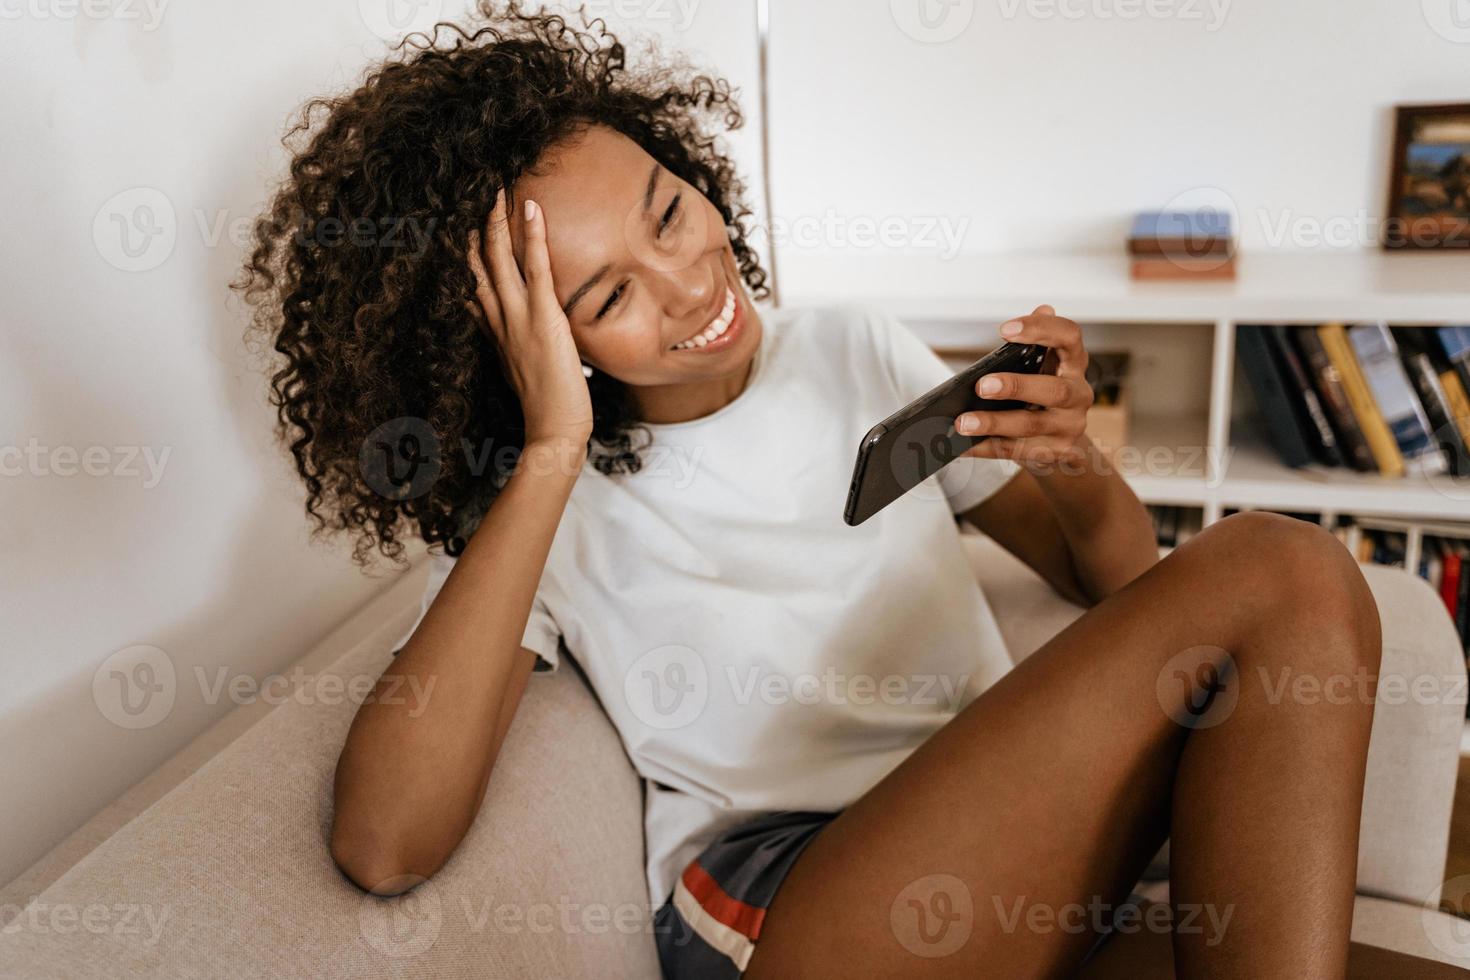 zwarte jonge vrouw in oortelefoons die mobiele telefoon gebruikt terwijl ze op de bank rust foto